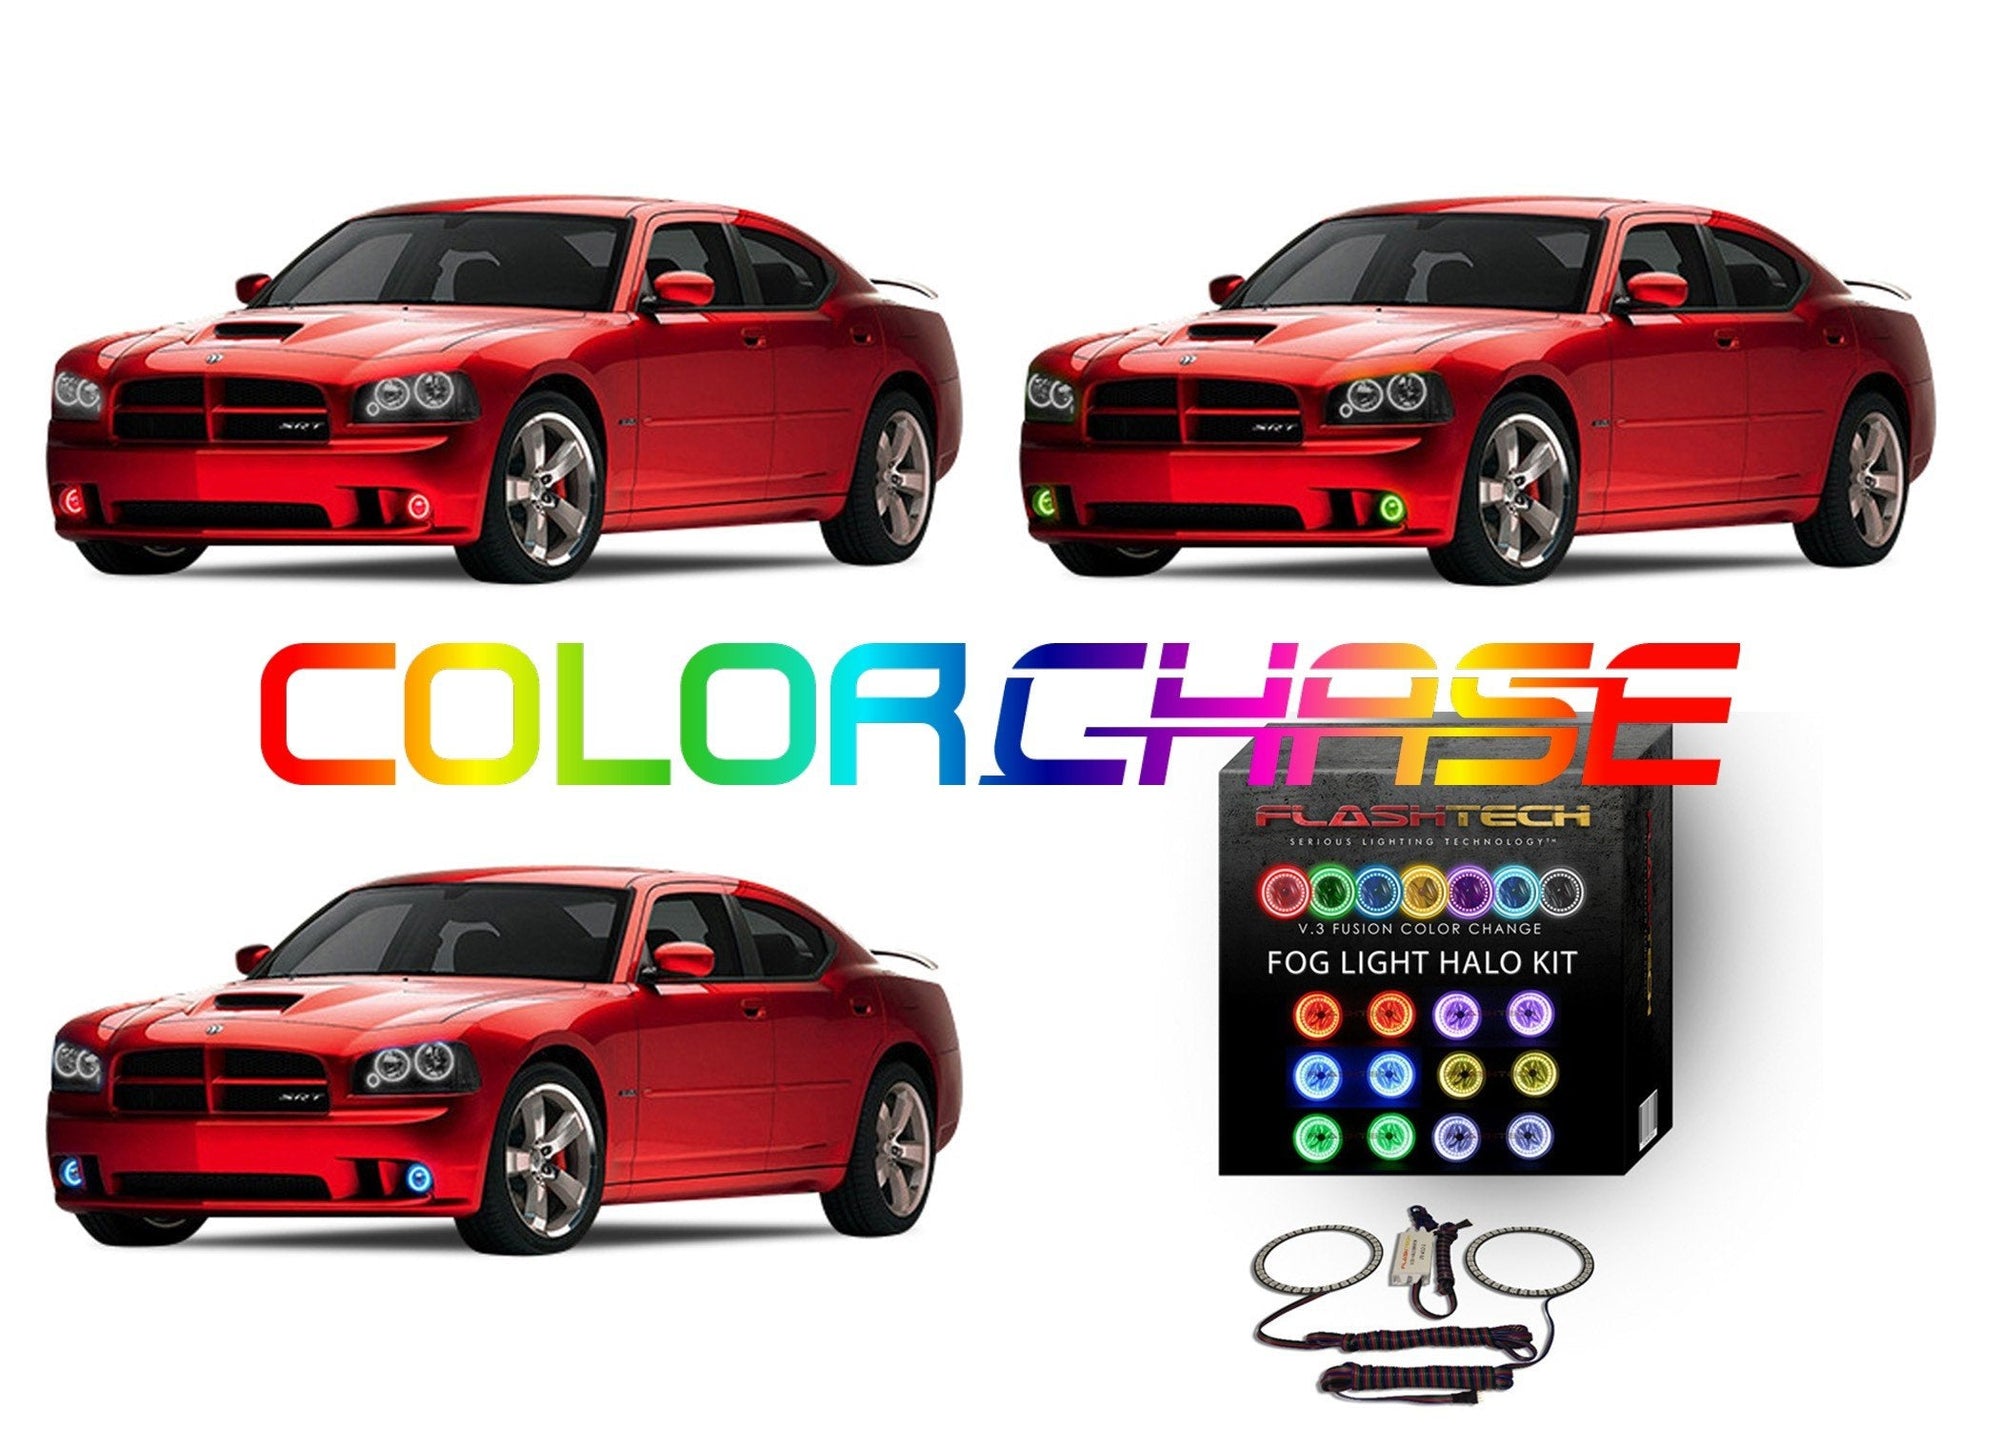 Dodge Charger ColorChase LED Halo Fog Light Kit 2005-2010